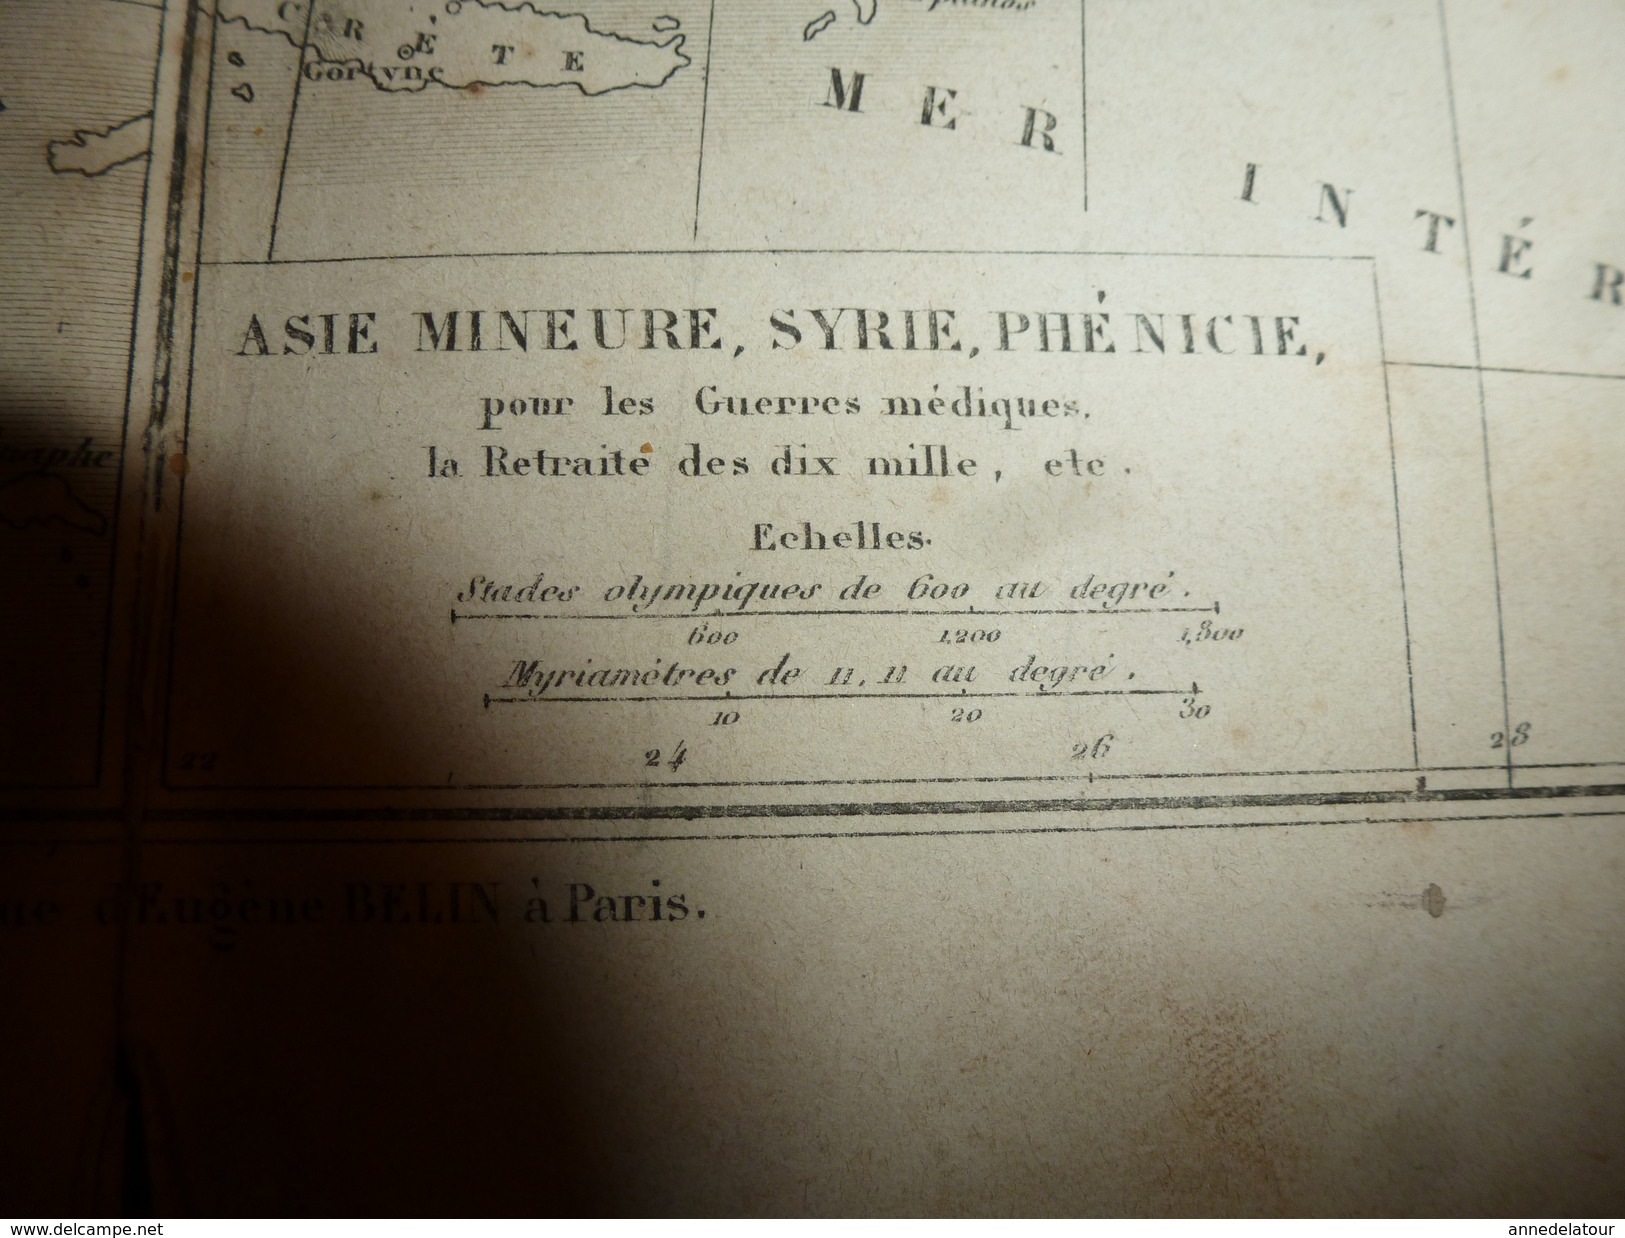 1861 Carte Géographique:Grèce, Asie Mineure,Syrie,Phenicie (Guerres médiques,etc) par Drioux- Leroy, grav.Jenotte